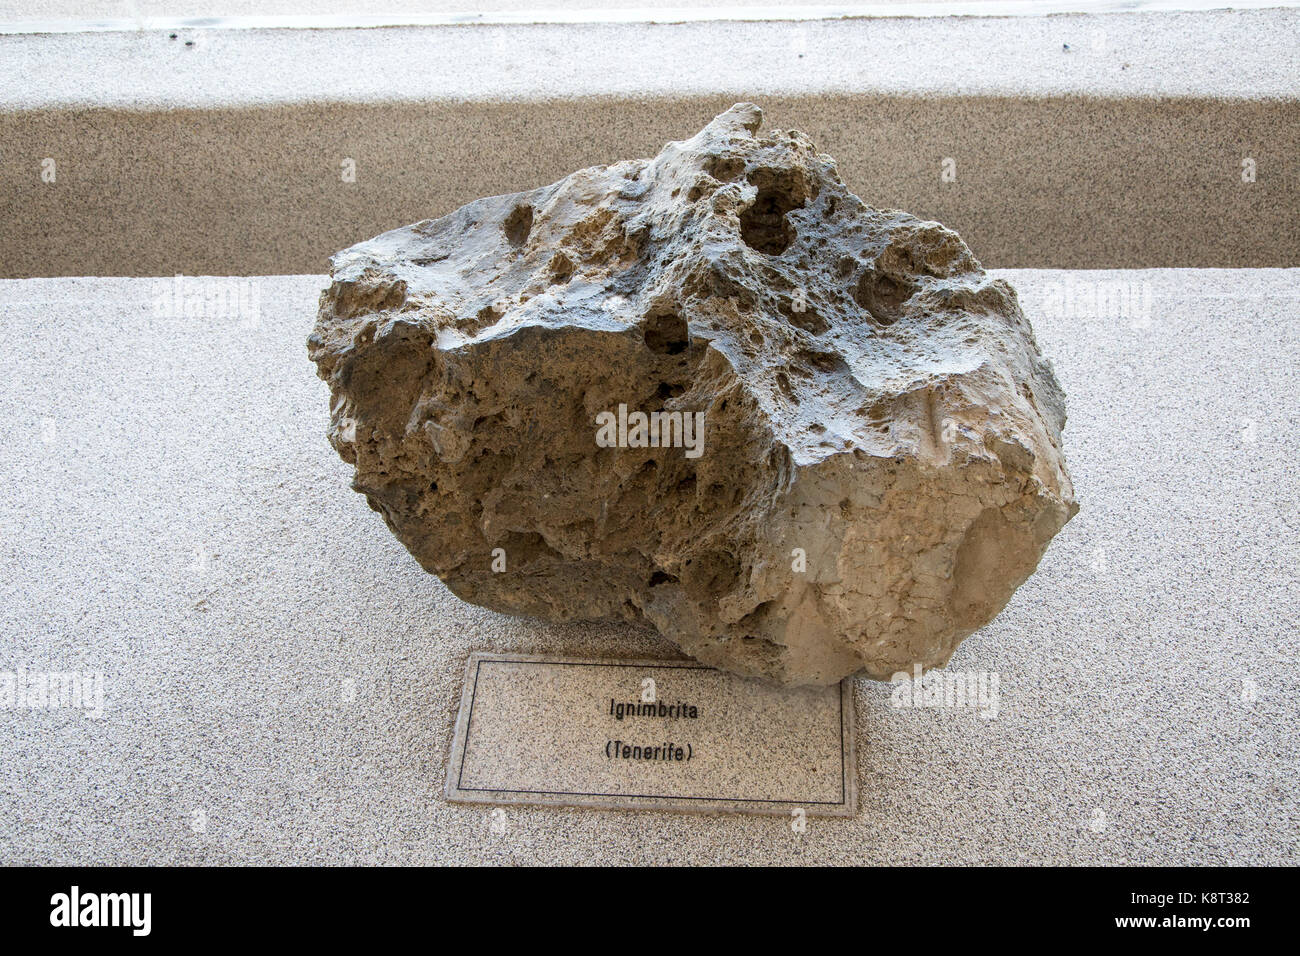 Ignimbrite rock sample geology display, Casa de los Volcanes volcanic study centre, Lanzarote, Canary island, Spain Stock Photo